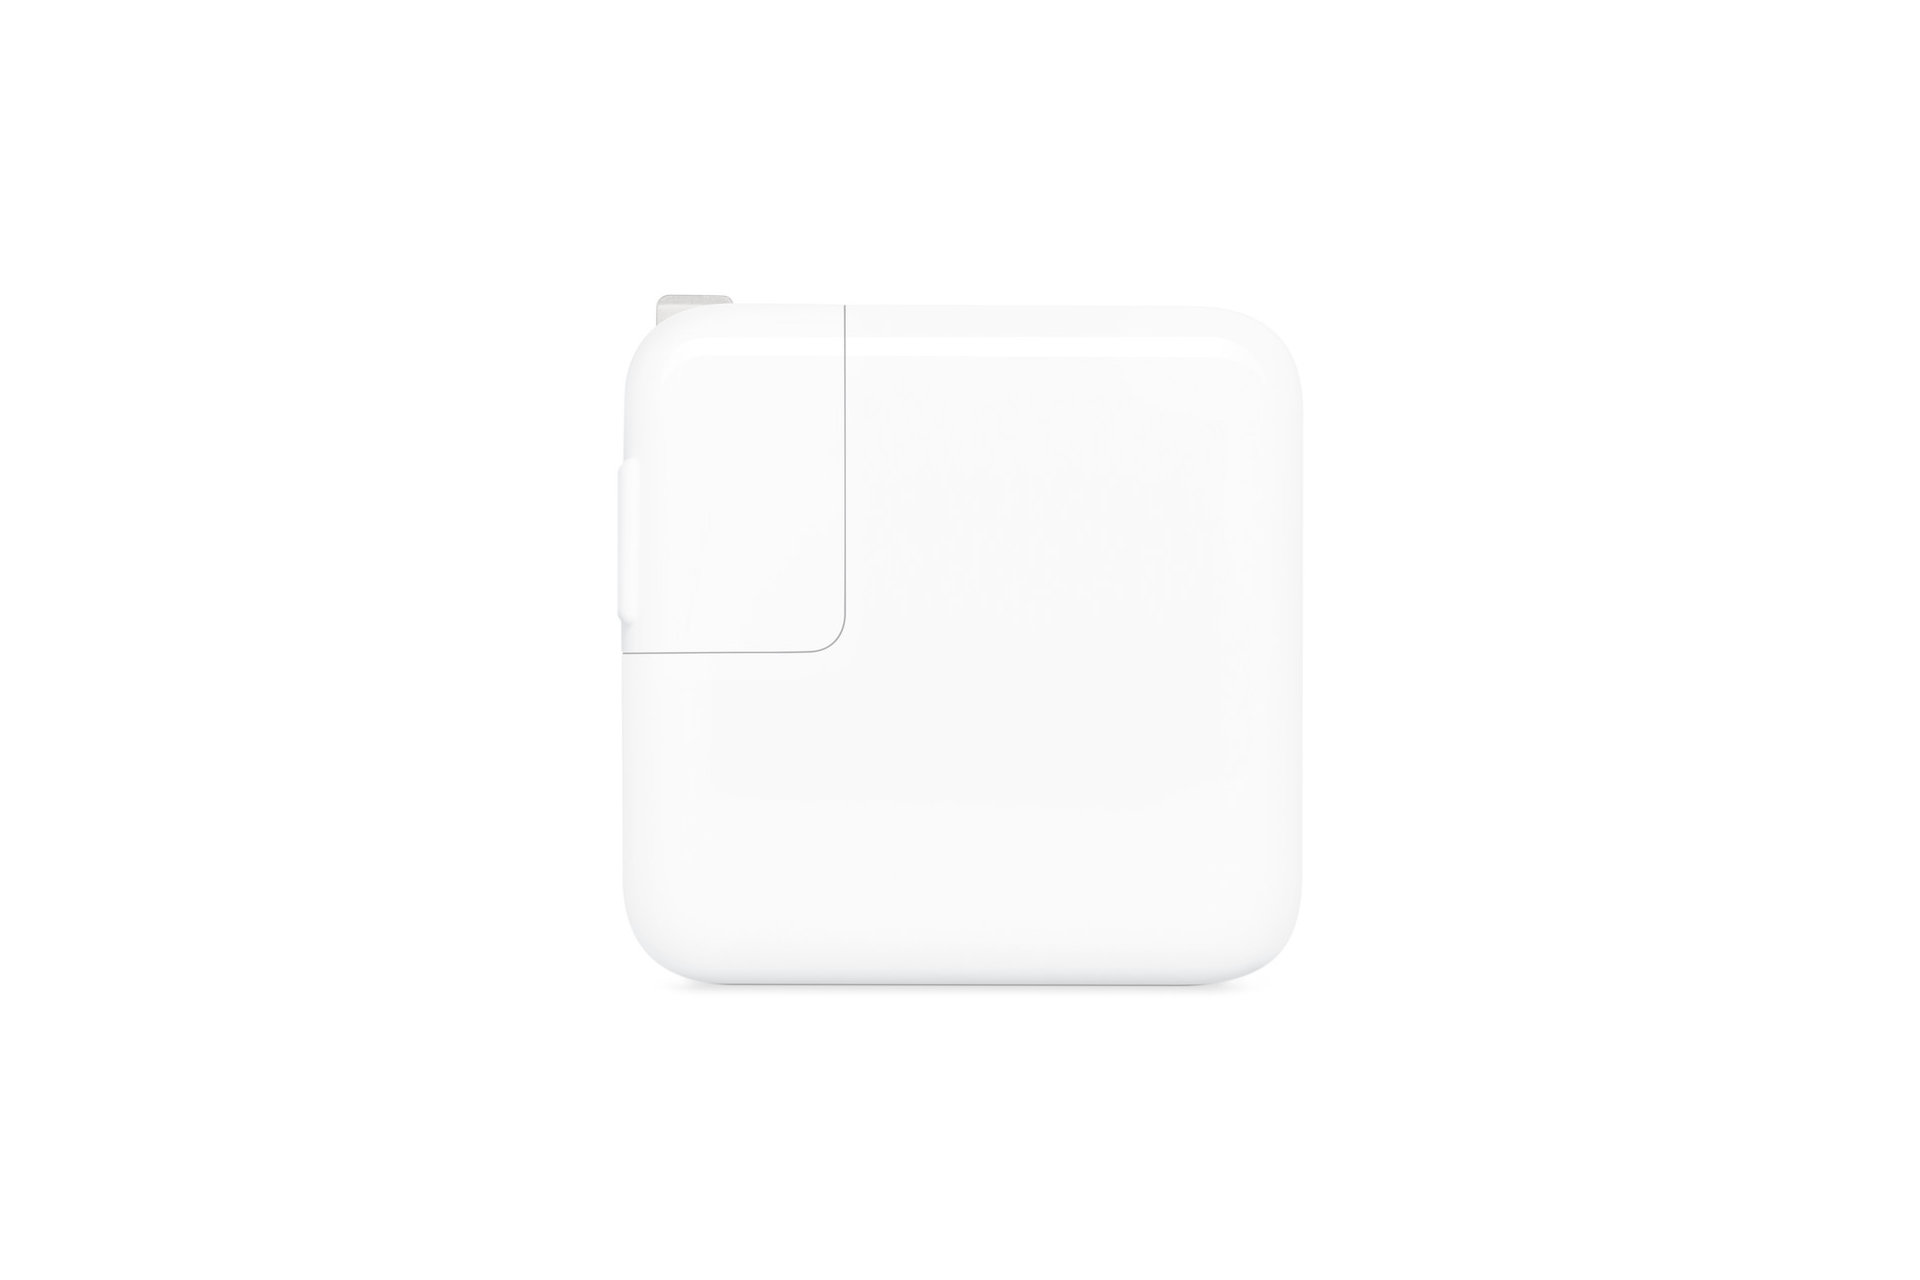 آداپتور برق 30W USB-C اپل در پس زمینه سفید ظاهر می شود.